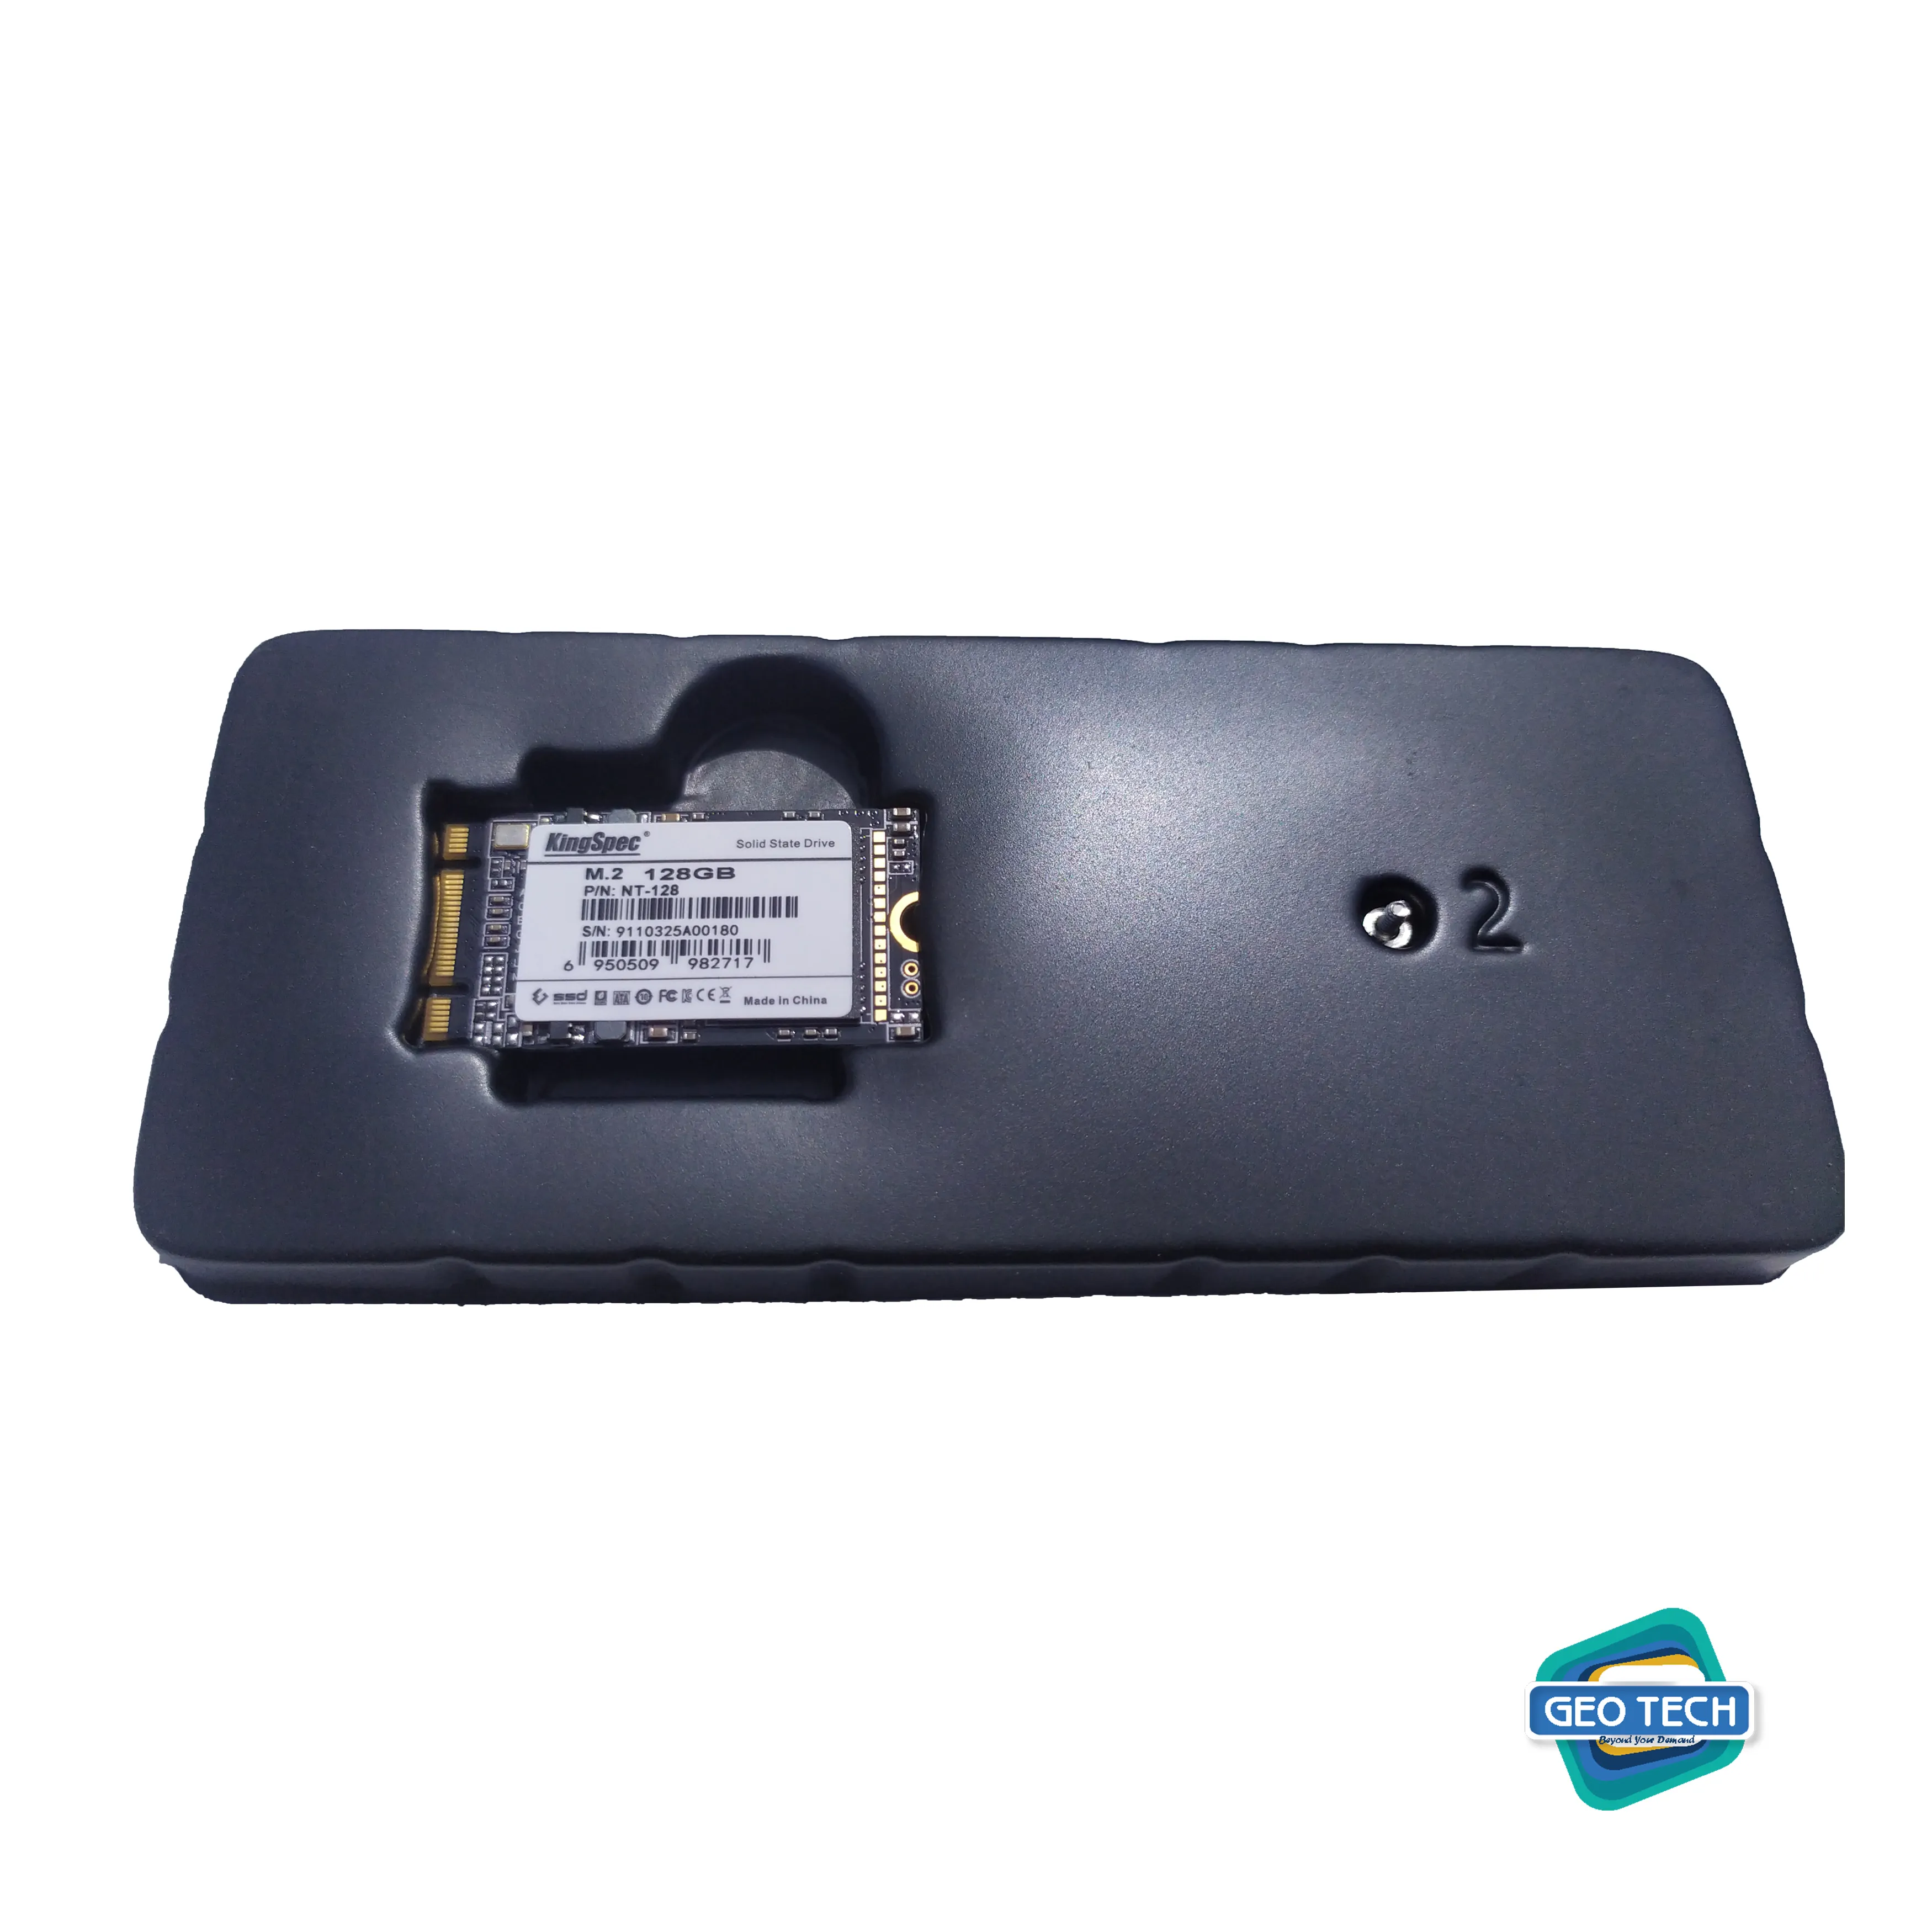 KingSpec M.2 SSD 2242 NGFF 128GB Internal Solid State Drive SATA 6Gb/s